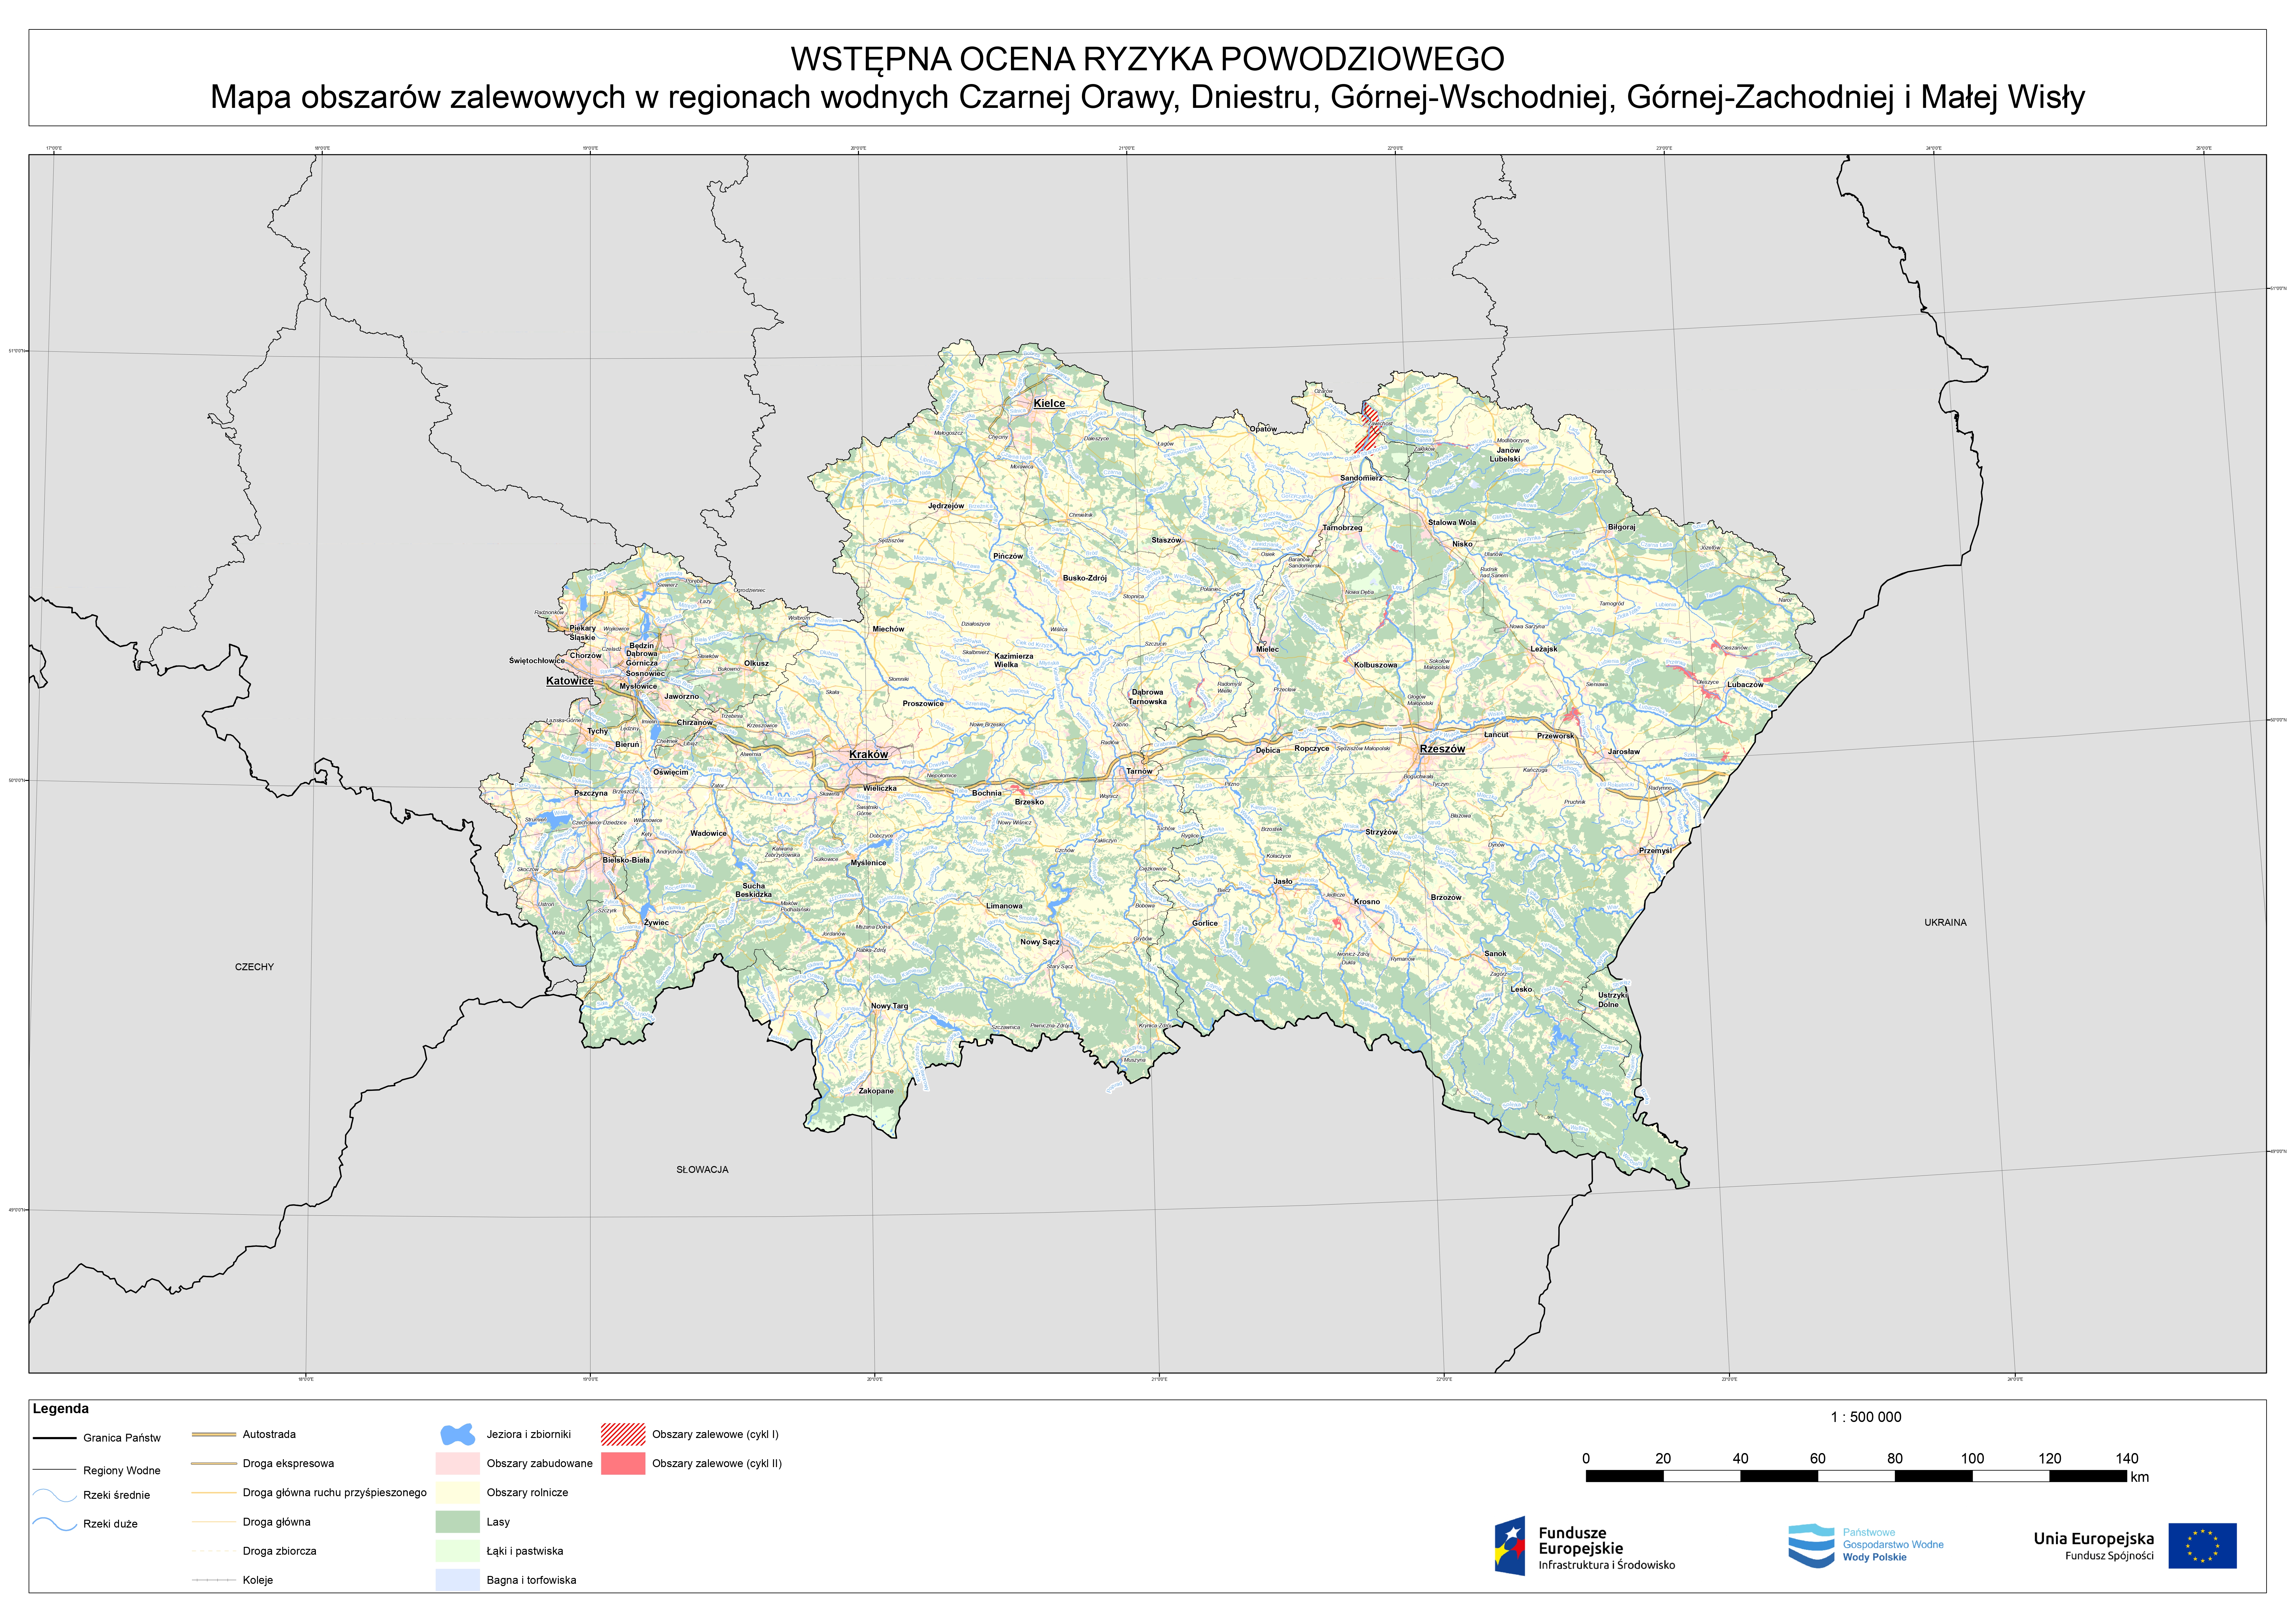 Wstępna ocena ryzyka powodziowego. Mapa obszarów zalewowych w regionach wodnych Czarnej Orawy, Dniestru, Górnej-Wschodniej, Górnej-Zachodniej i Małej Wisły